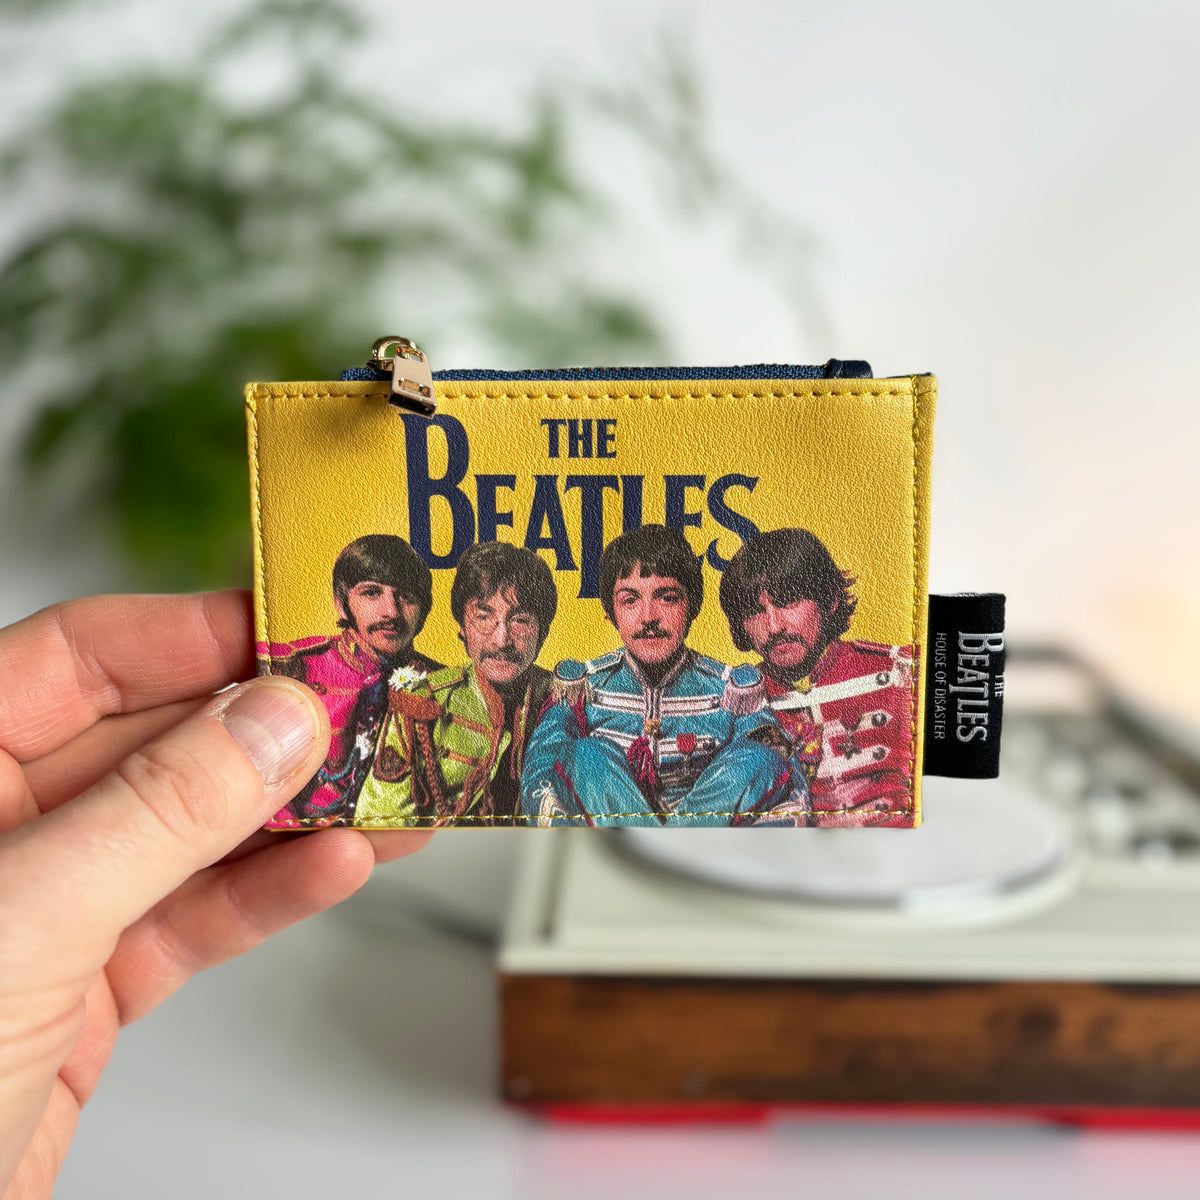 The Beatles Sgt. Pepper Zip Purse